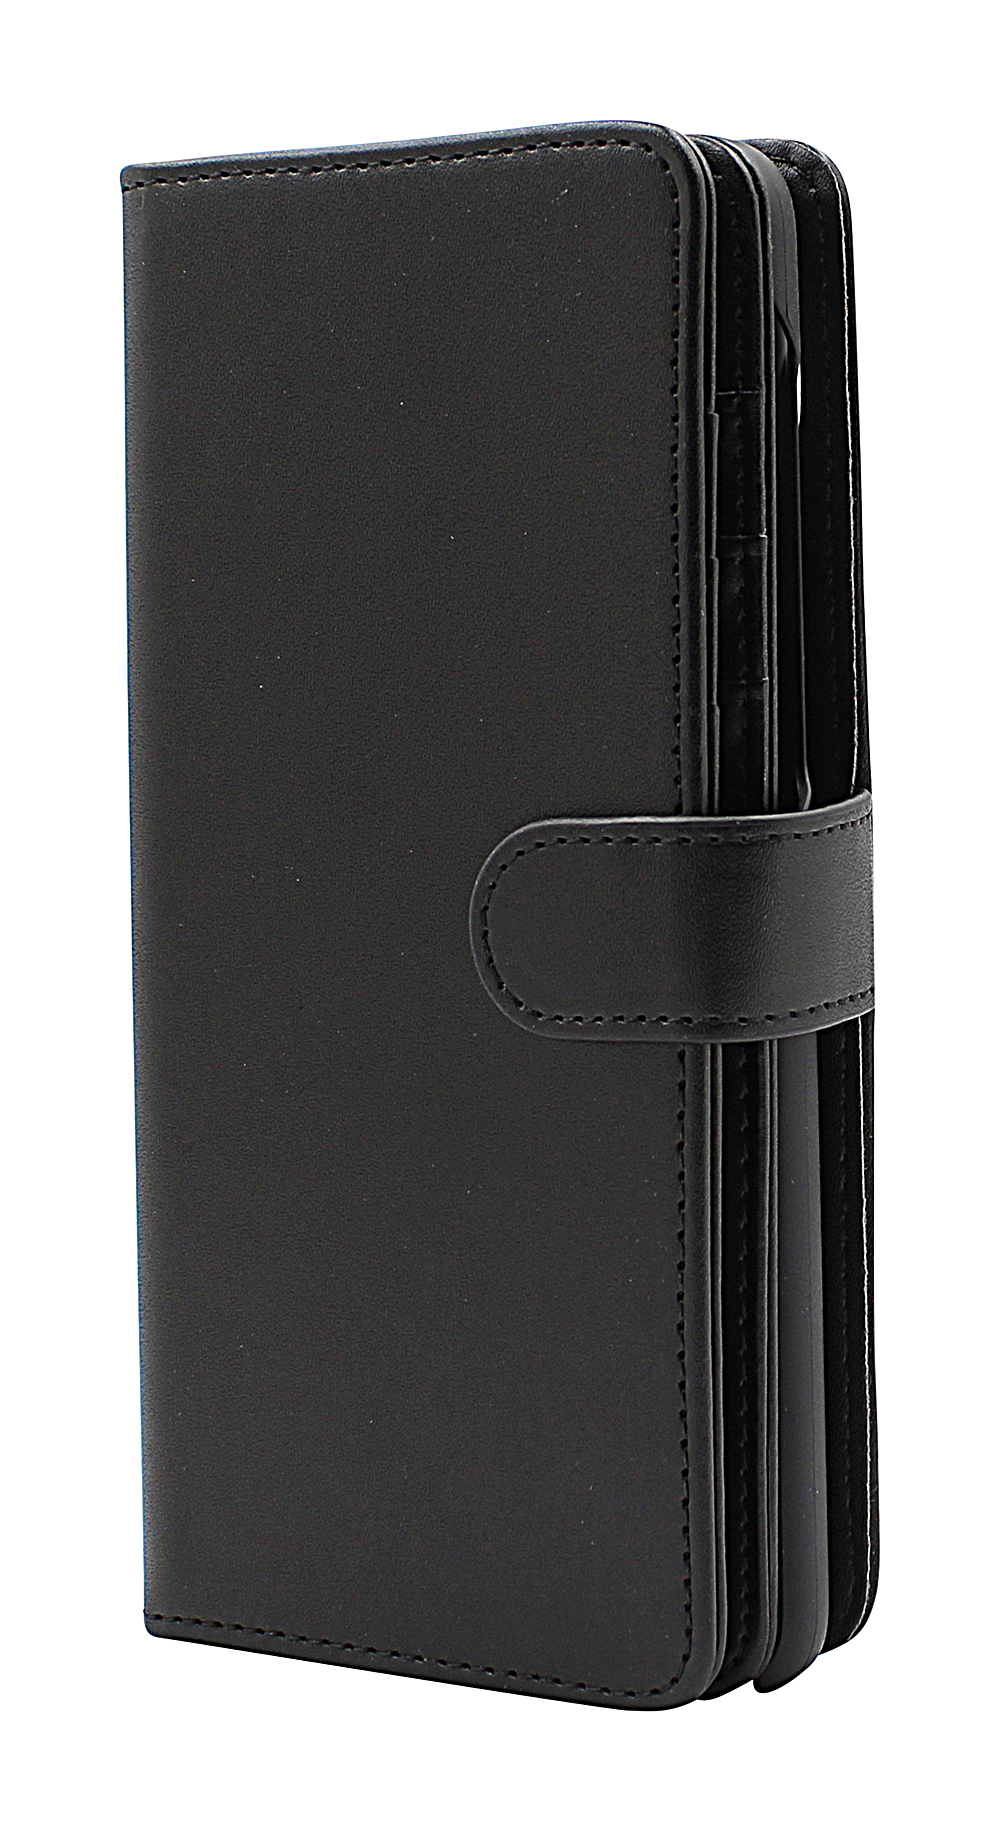 Skimblocker XL Magnet Wallet Motorola Moto G 5G Plus